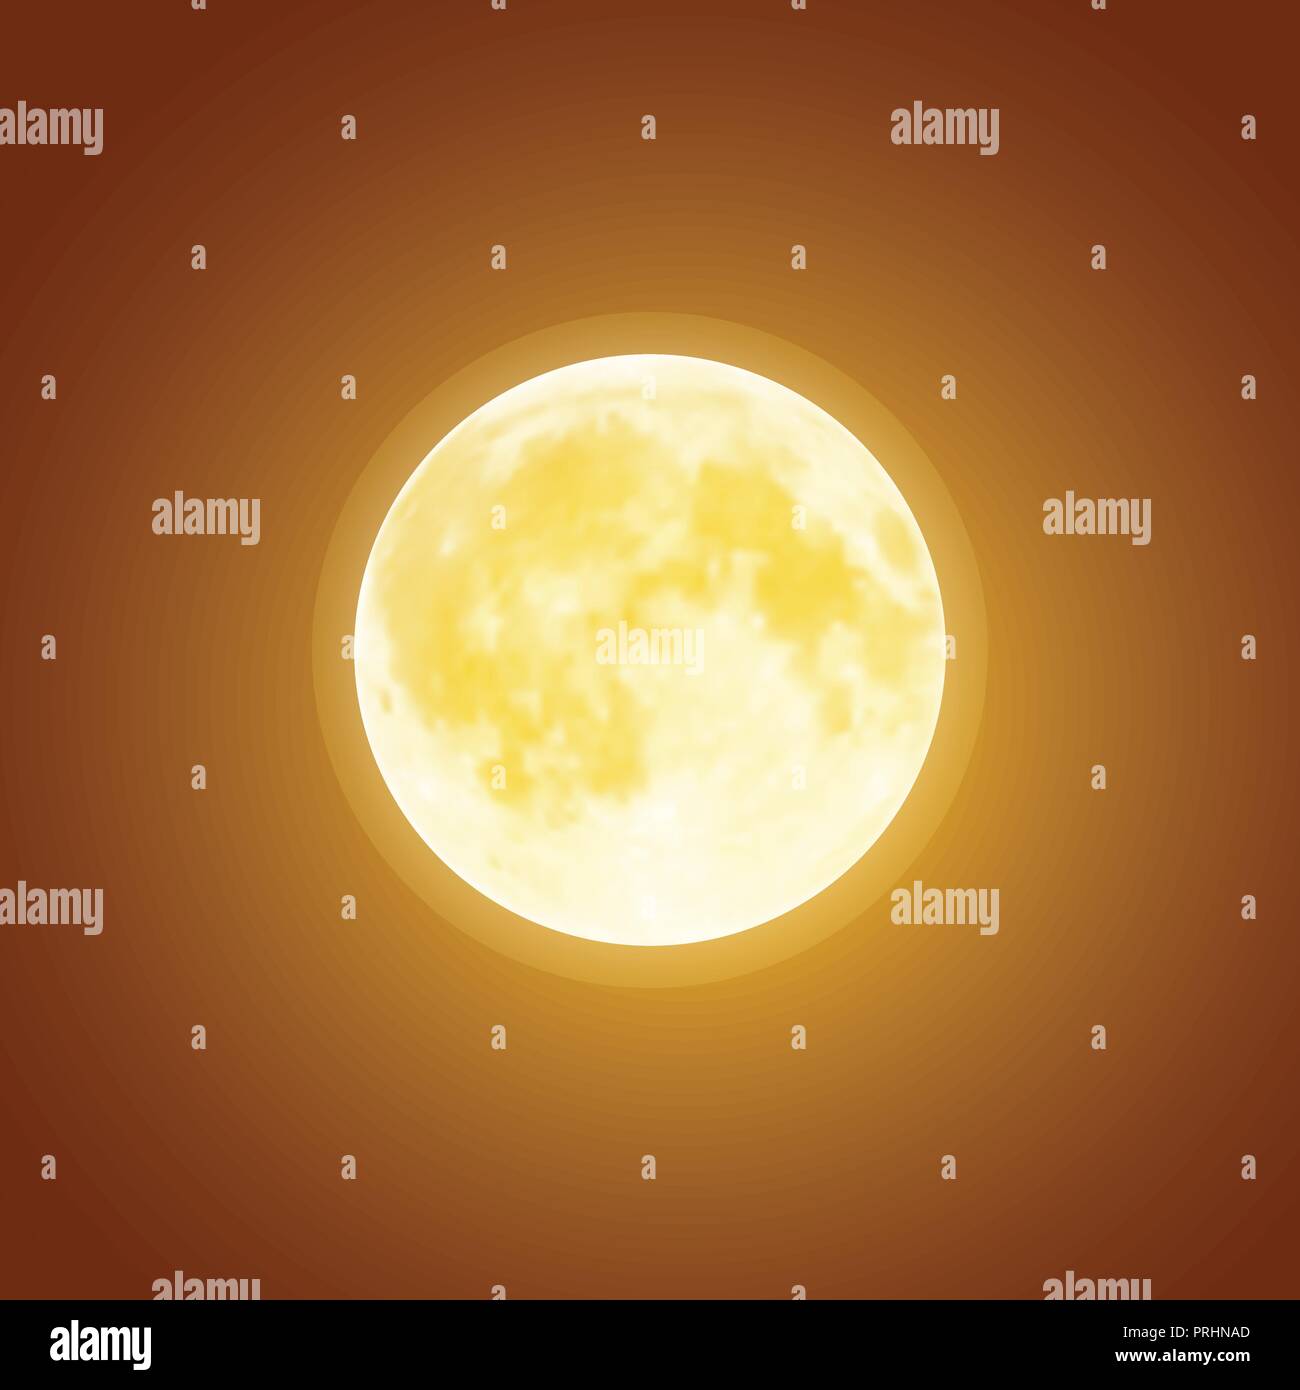 Vector voller blutiger Mond über Dunkelbraun nacht himmel Hintergrund. Halloween Urlaub Vorlage Stock Vektor